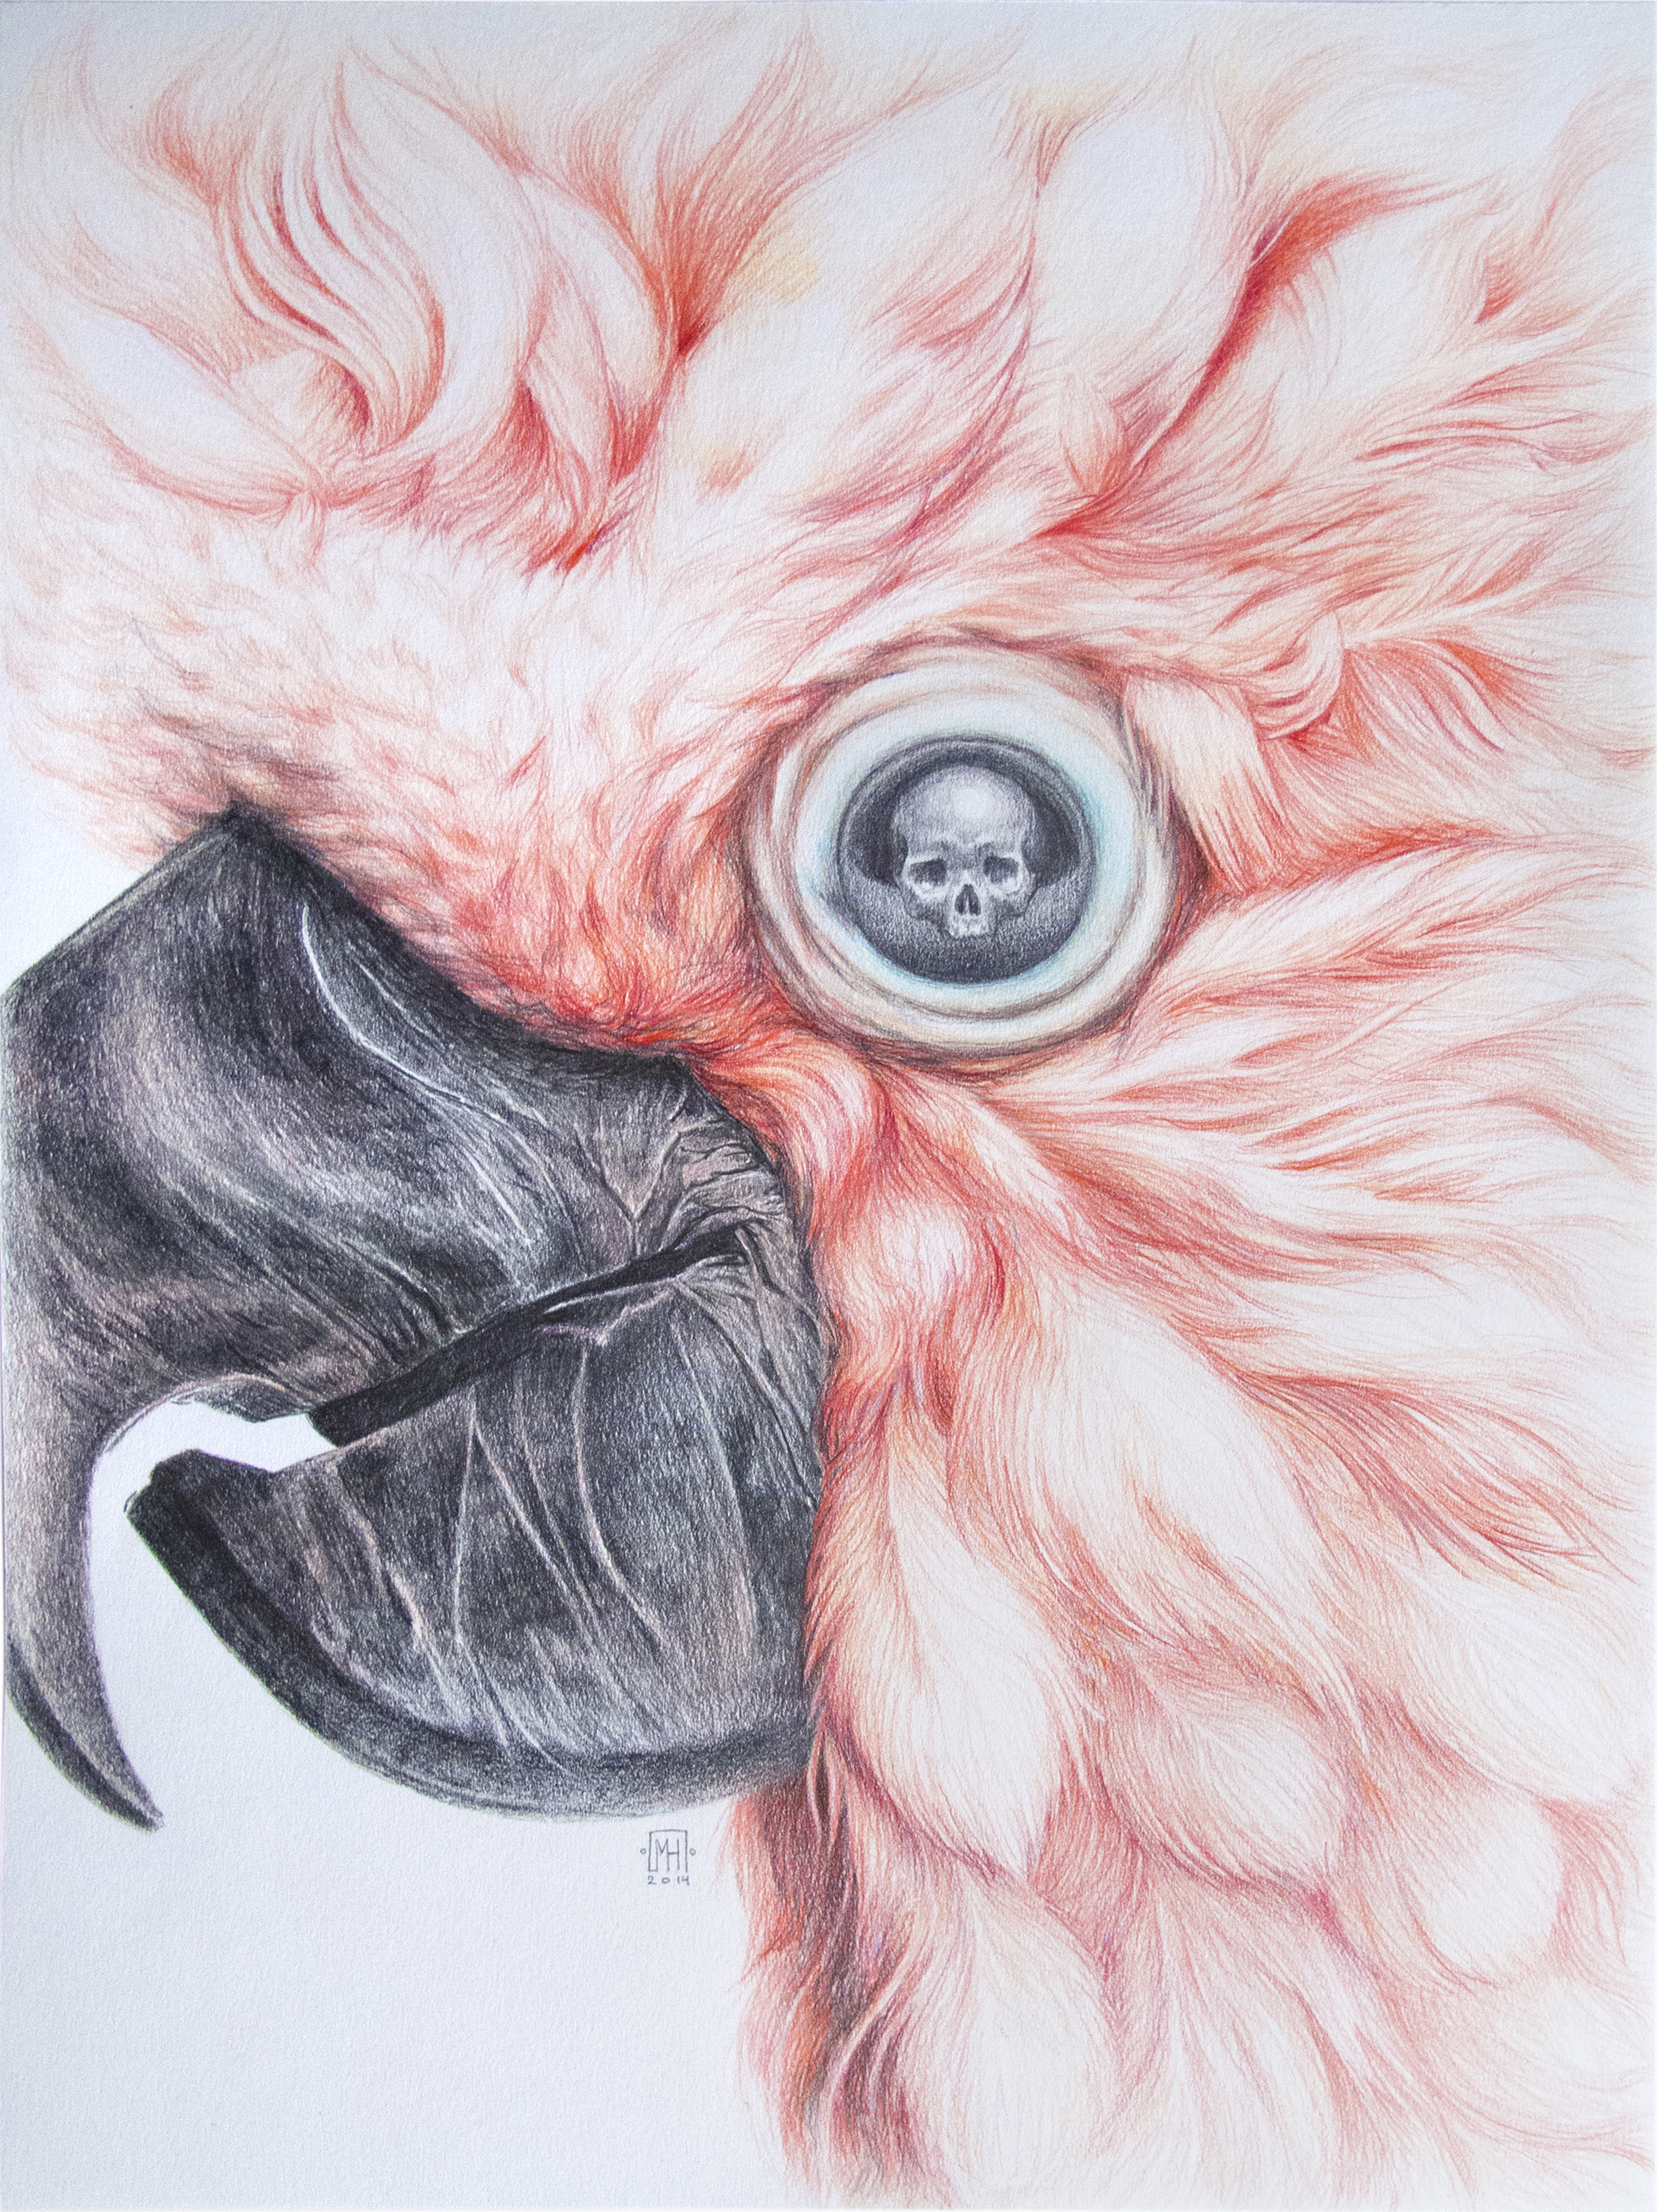 Coco Pink Kranion -  42,5x52,5 cm  - 750€ - Crayons de couleur et graphite sur papier 160g